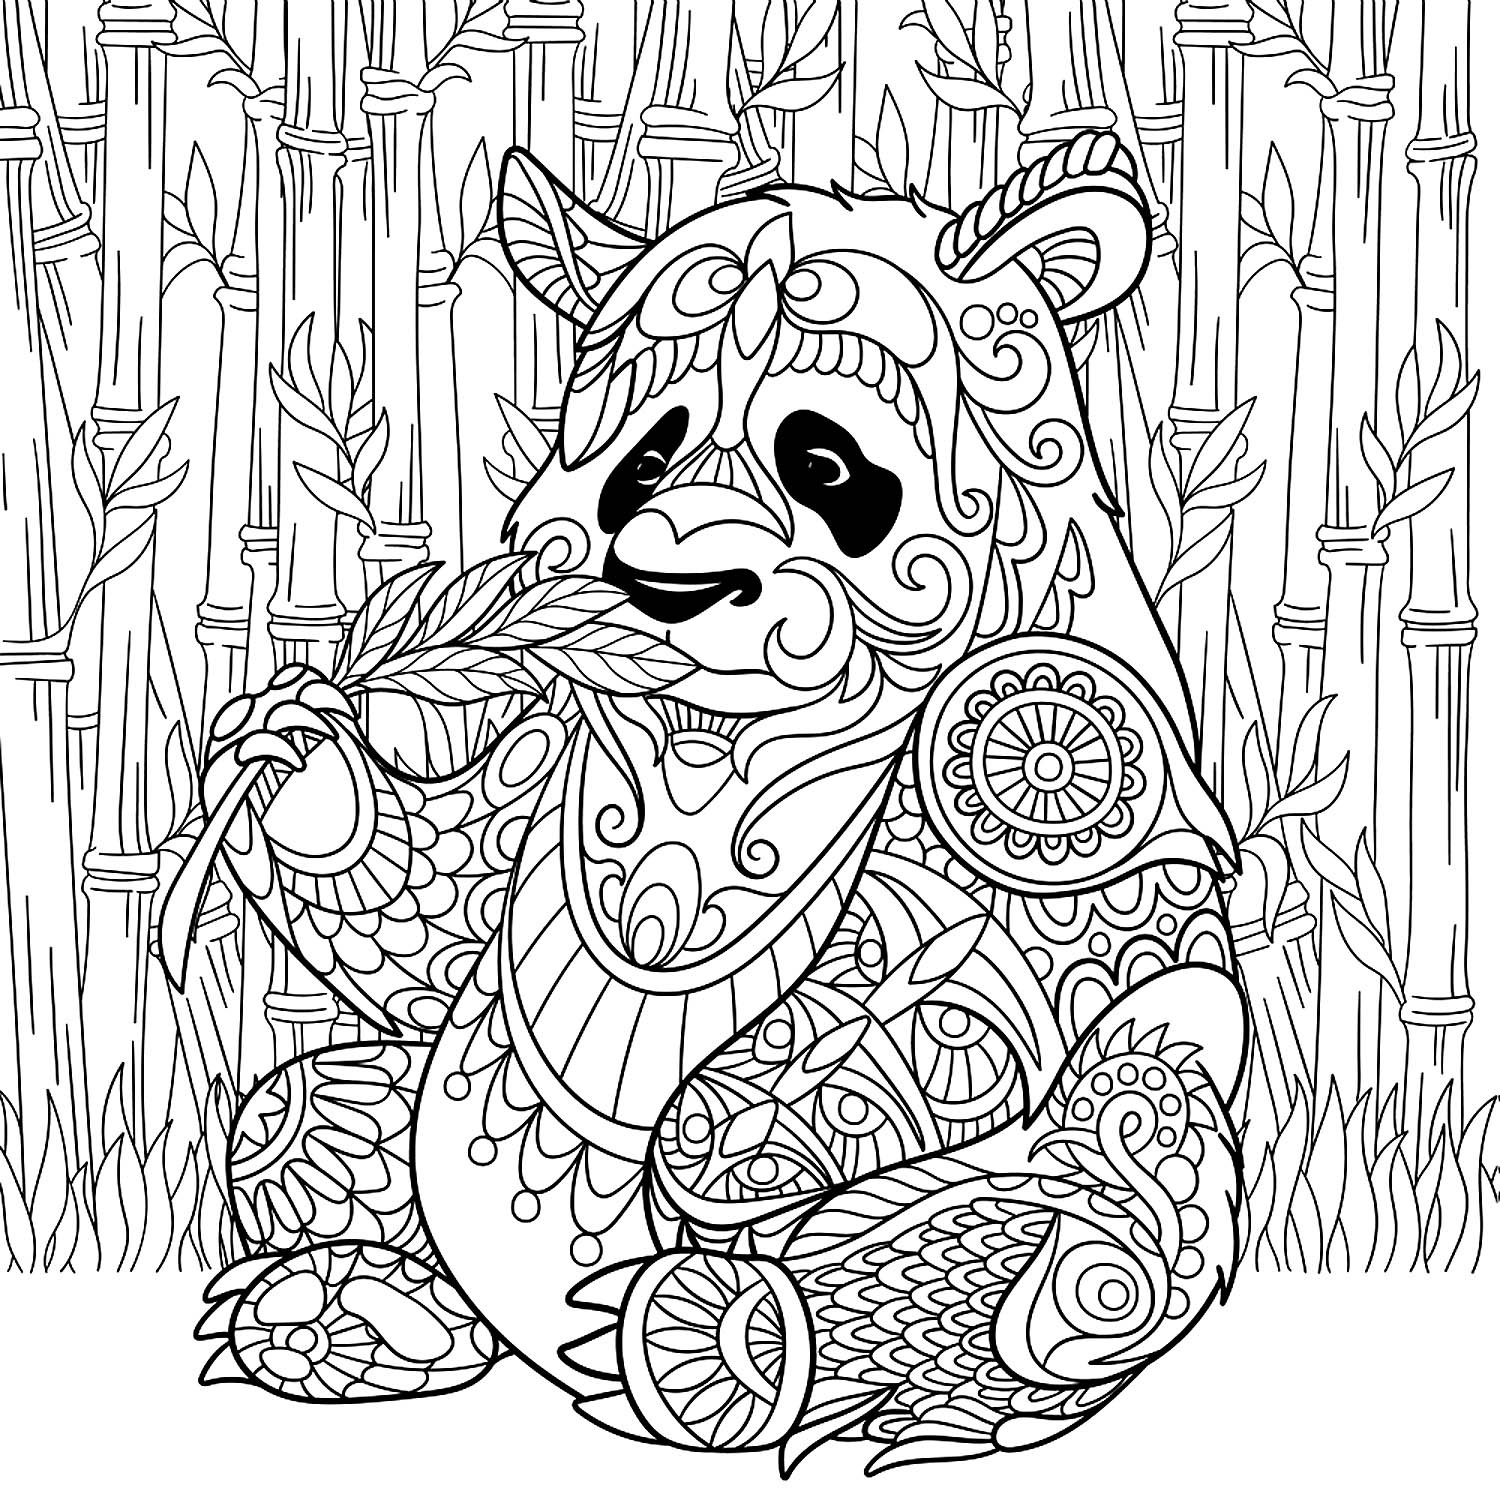 Drawing of a mandala panda coloring page